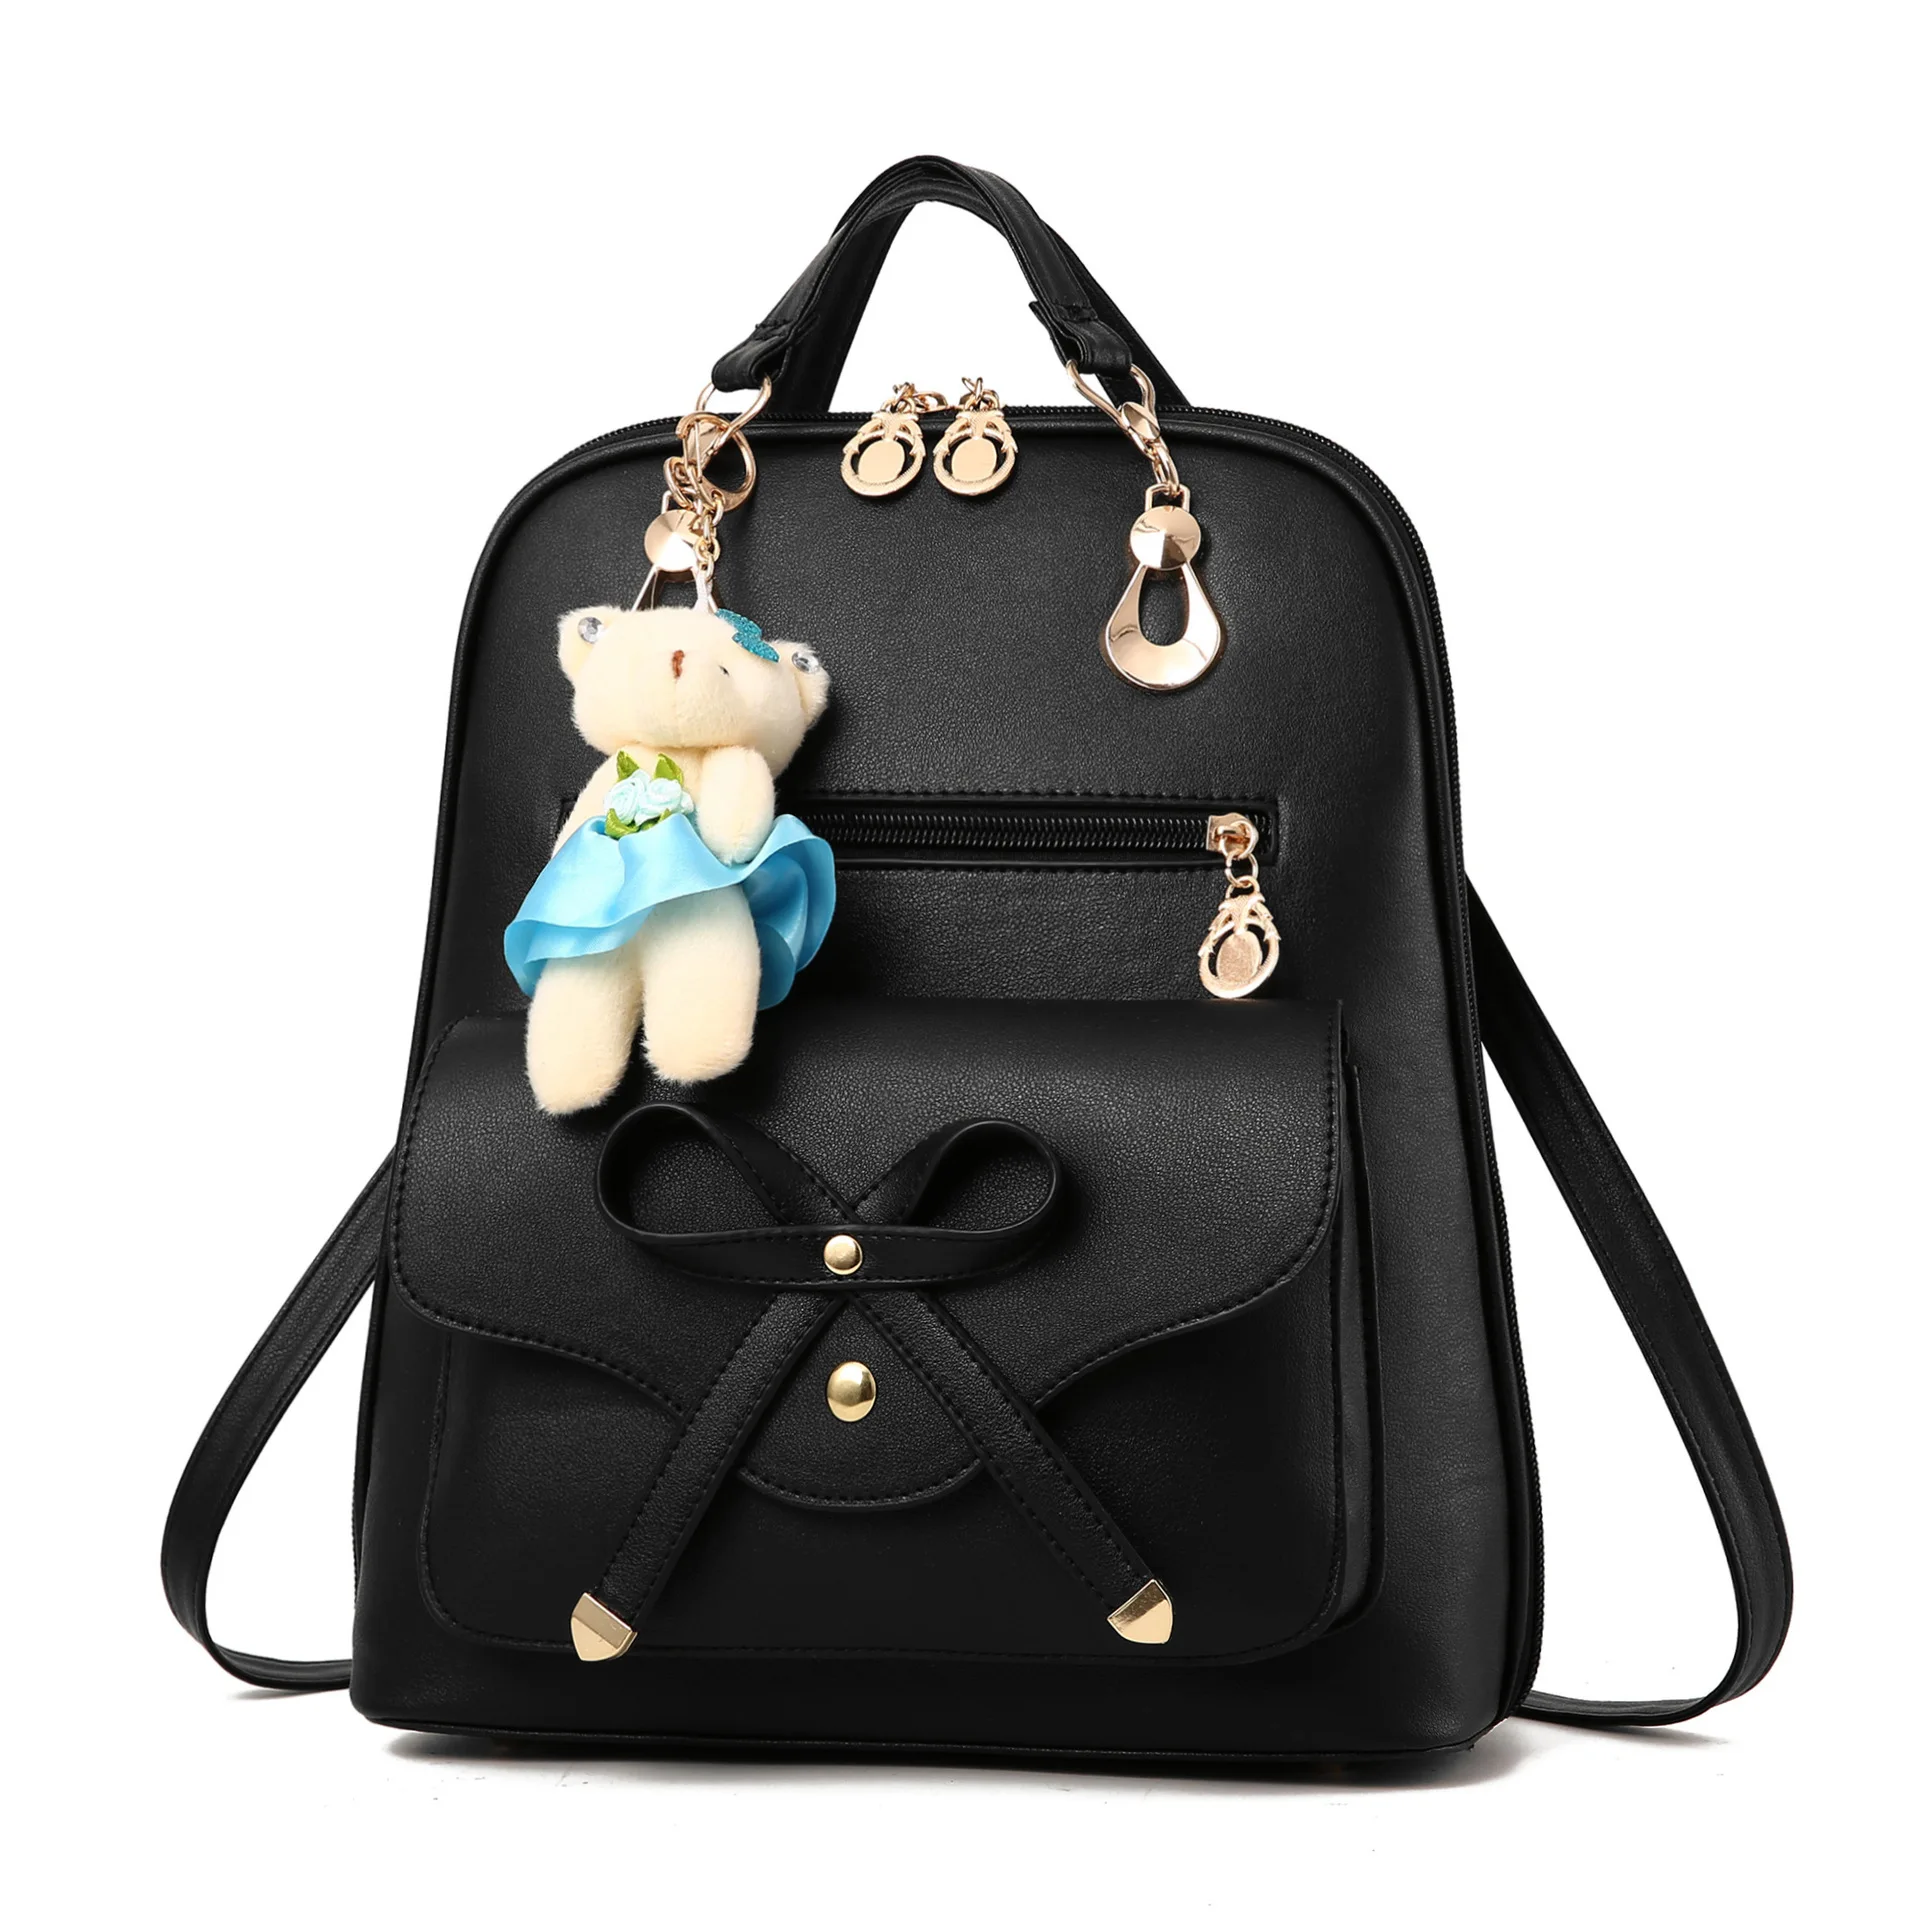 Милый женский рюкзак с защитой от кражи, Модный женский рюкзак из искусственной кожи, рюкзак для путешествий, школьные сумки для девочек-подростков, рюкзак софтбэк - Цвет: black backpack 1